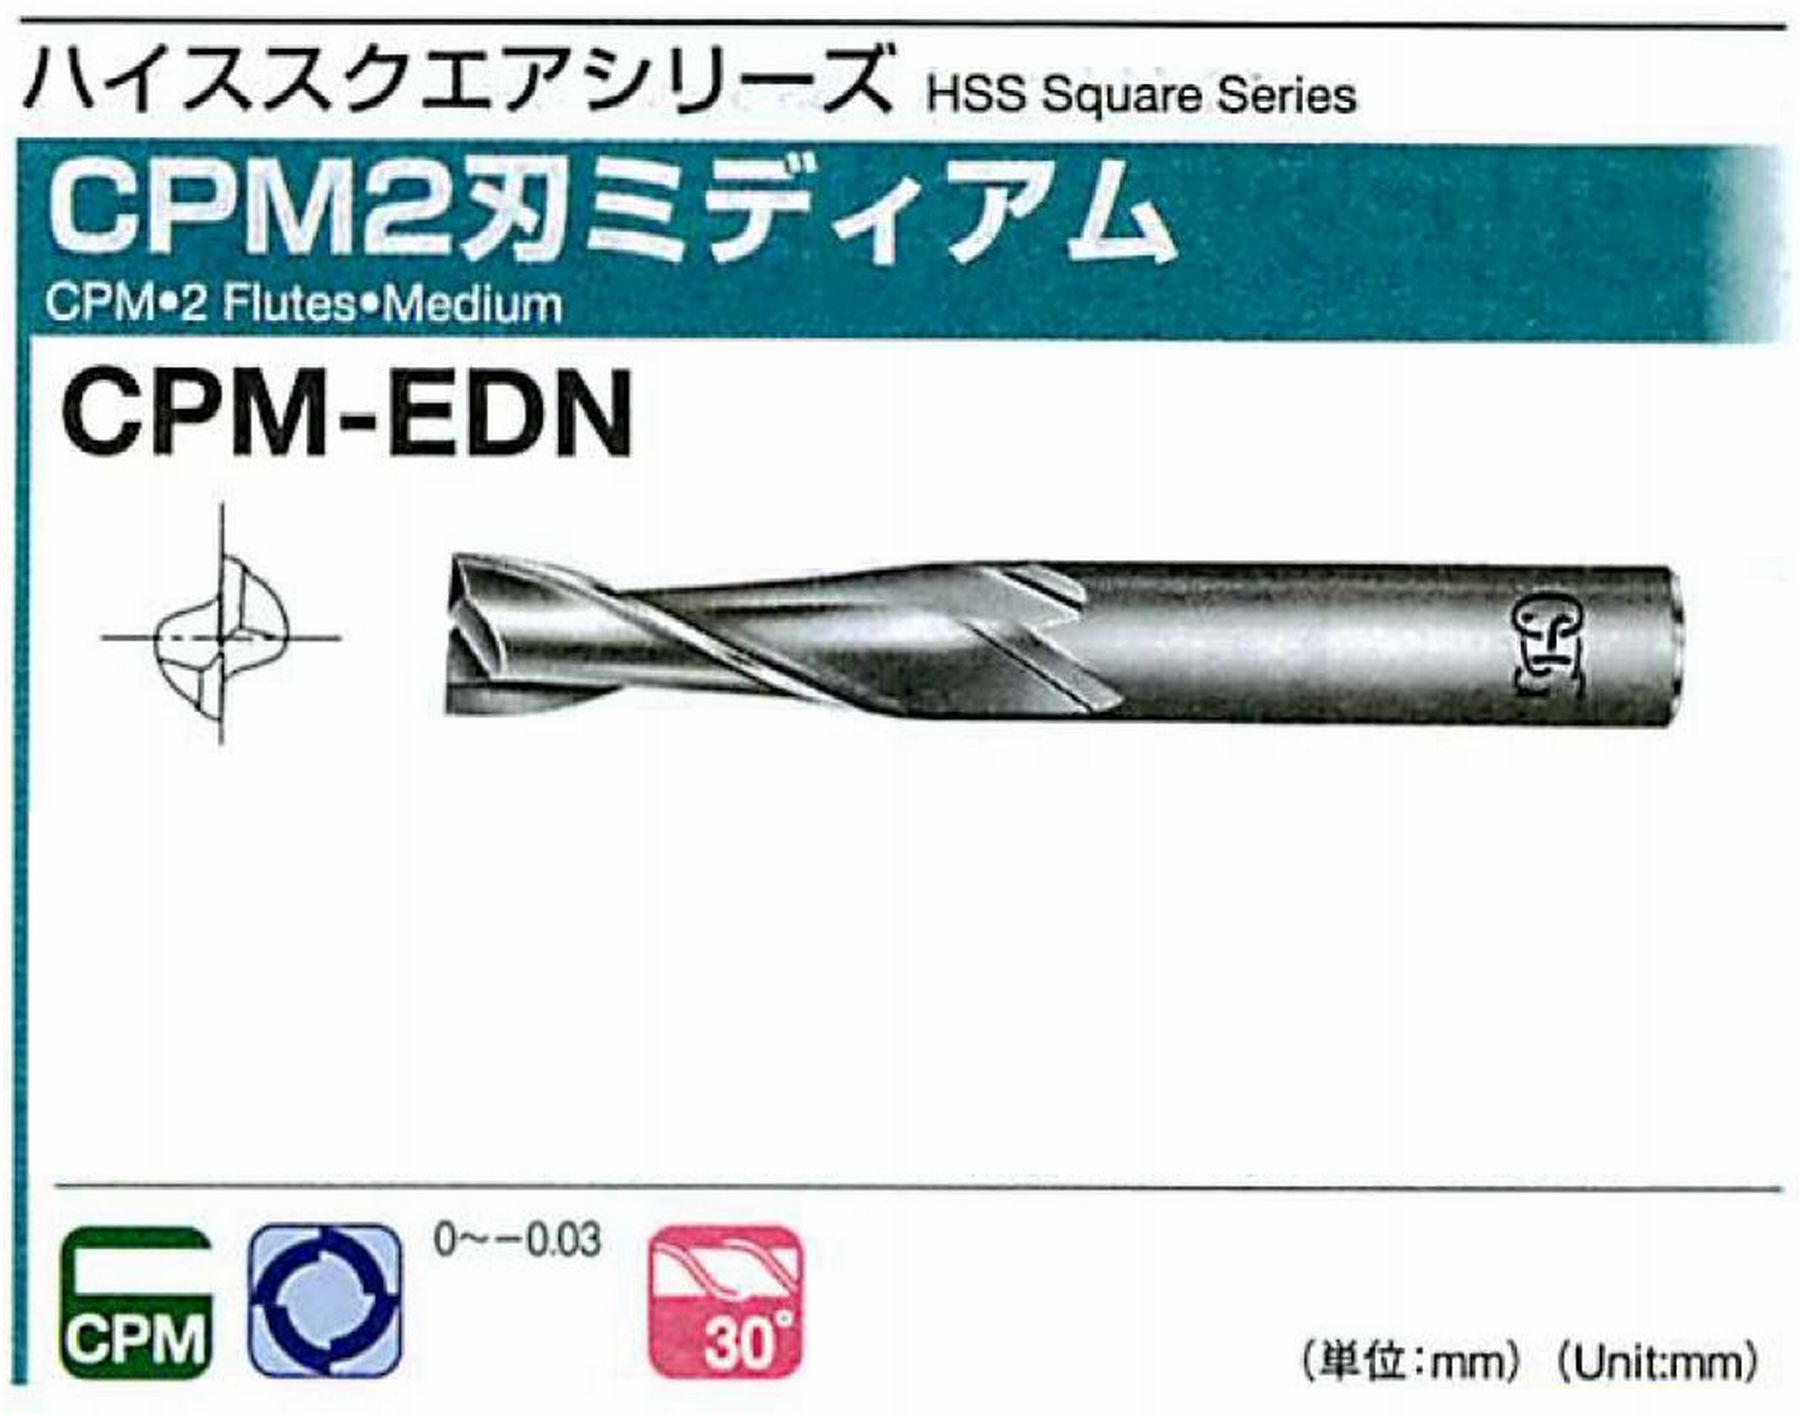 オーエスジー/OSG CPM2刃 ミディアム CPM-EDN 外径6 全長60 刃長15 シャンク径8mm